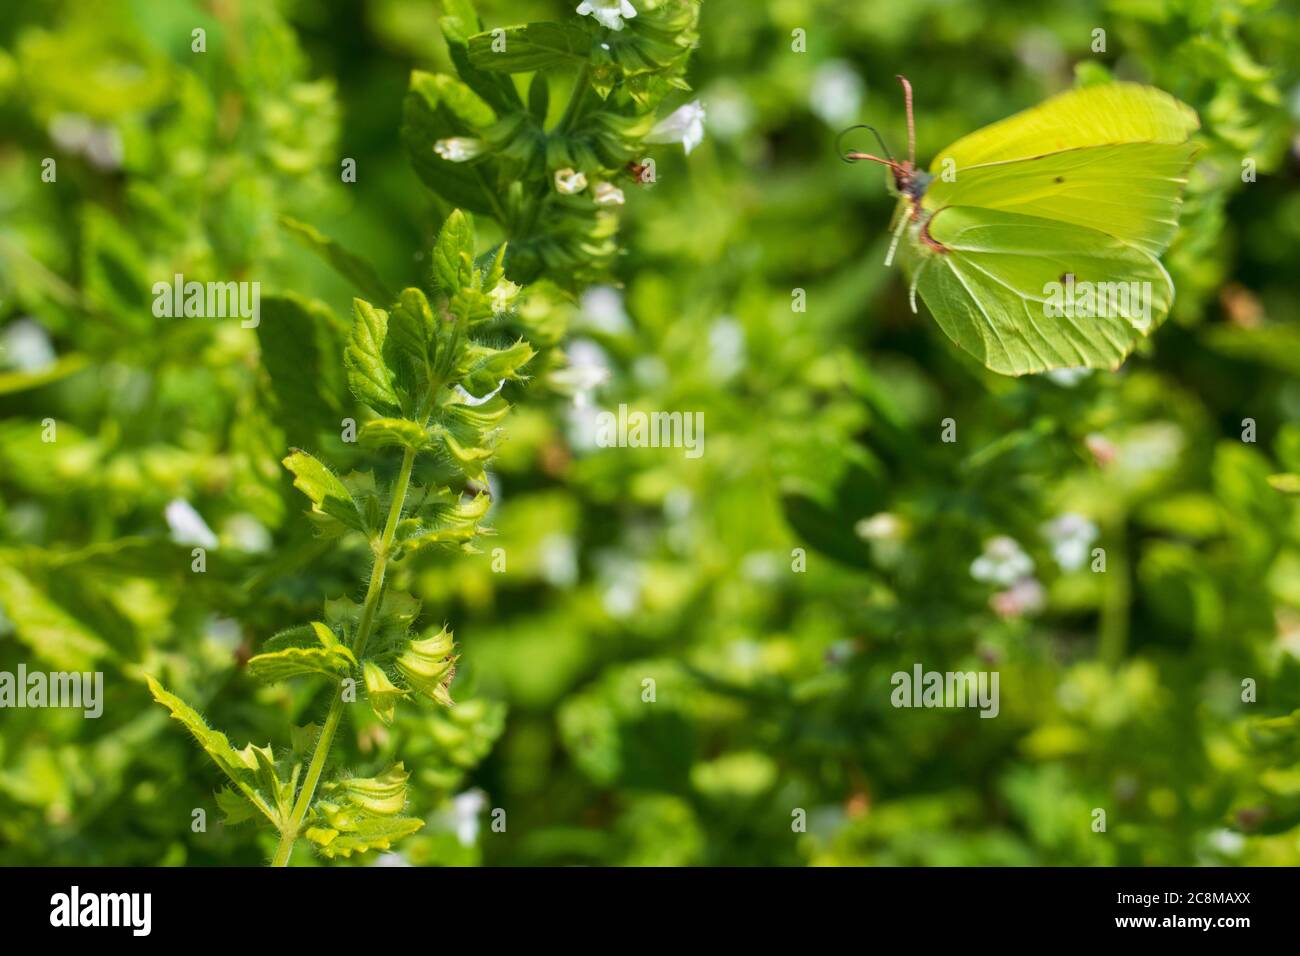 Zitronenfalter Schmetterling an einer Mariennessel Andorn Pflanze Stock Photo